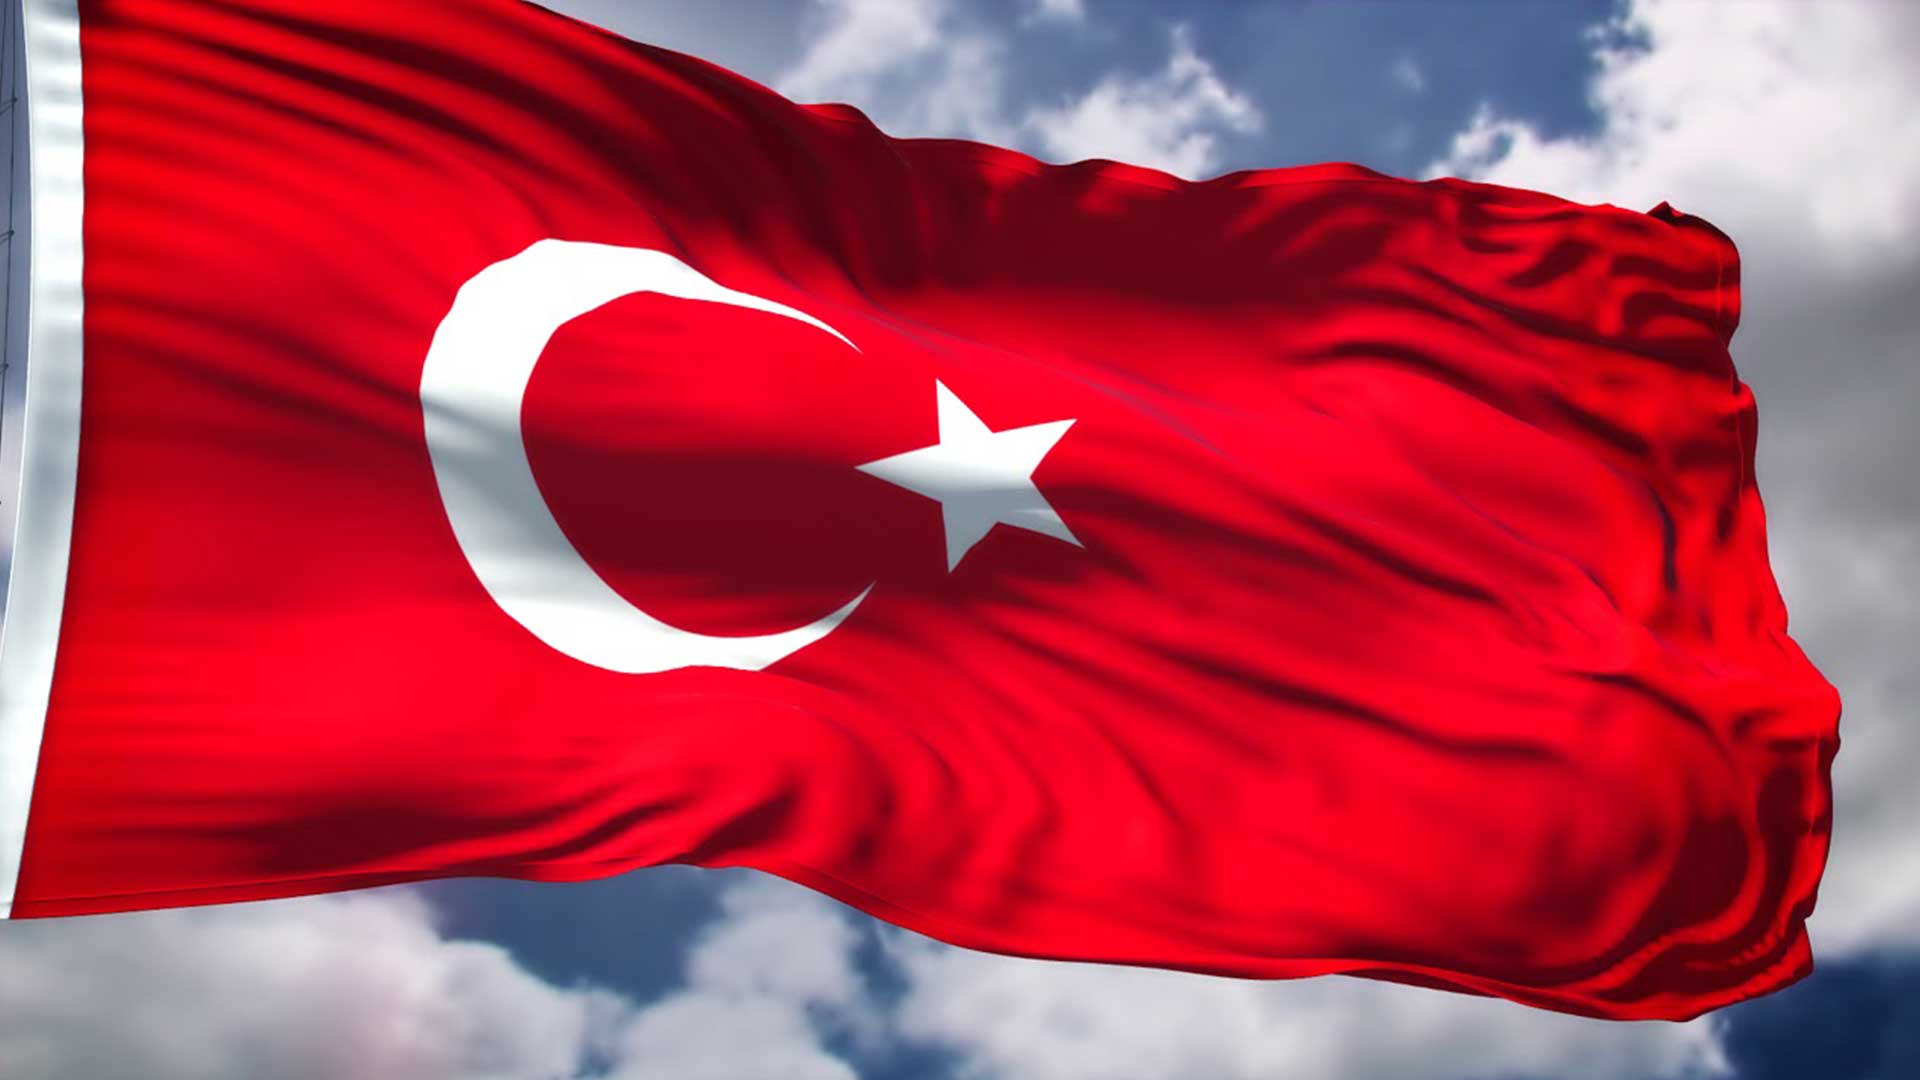 turk bayragi resimleri 2020 16